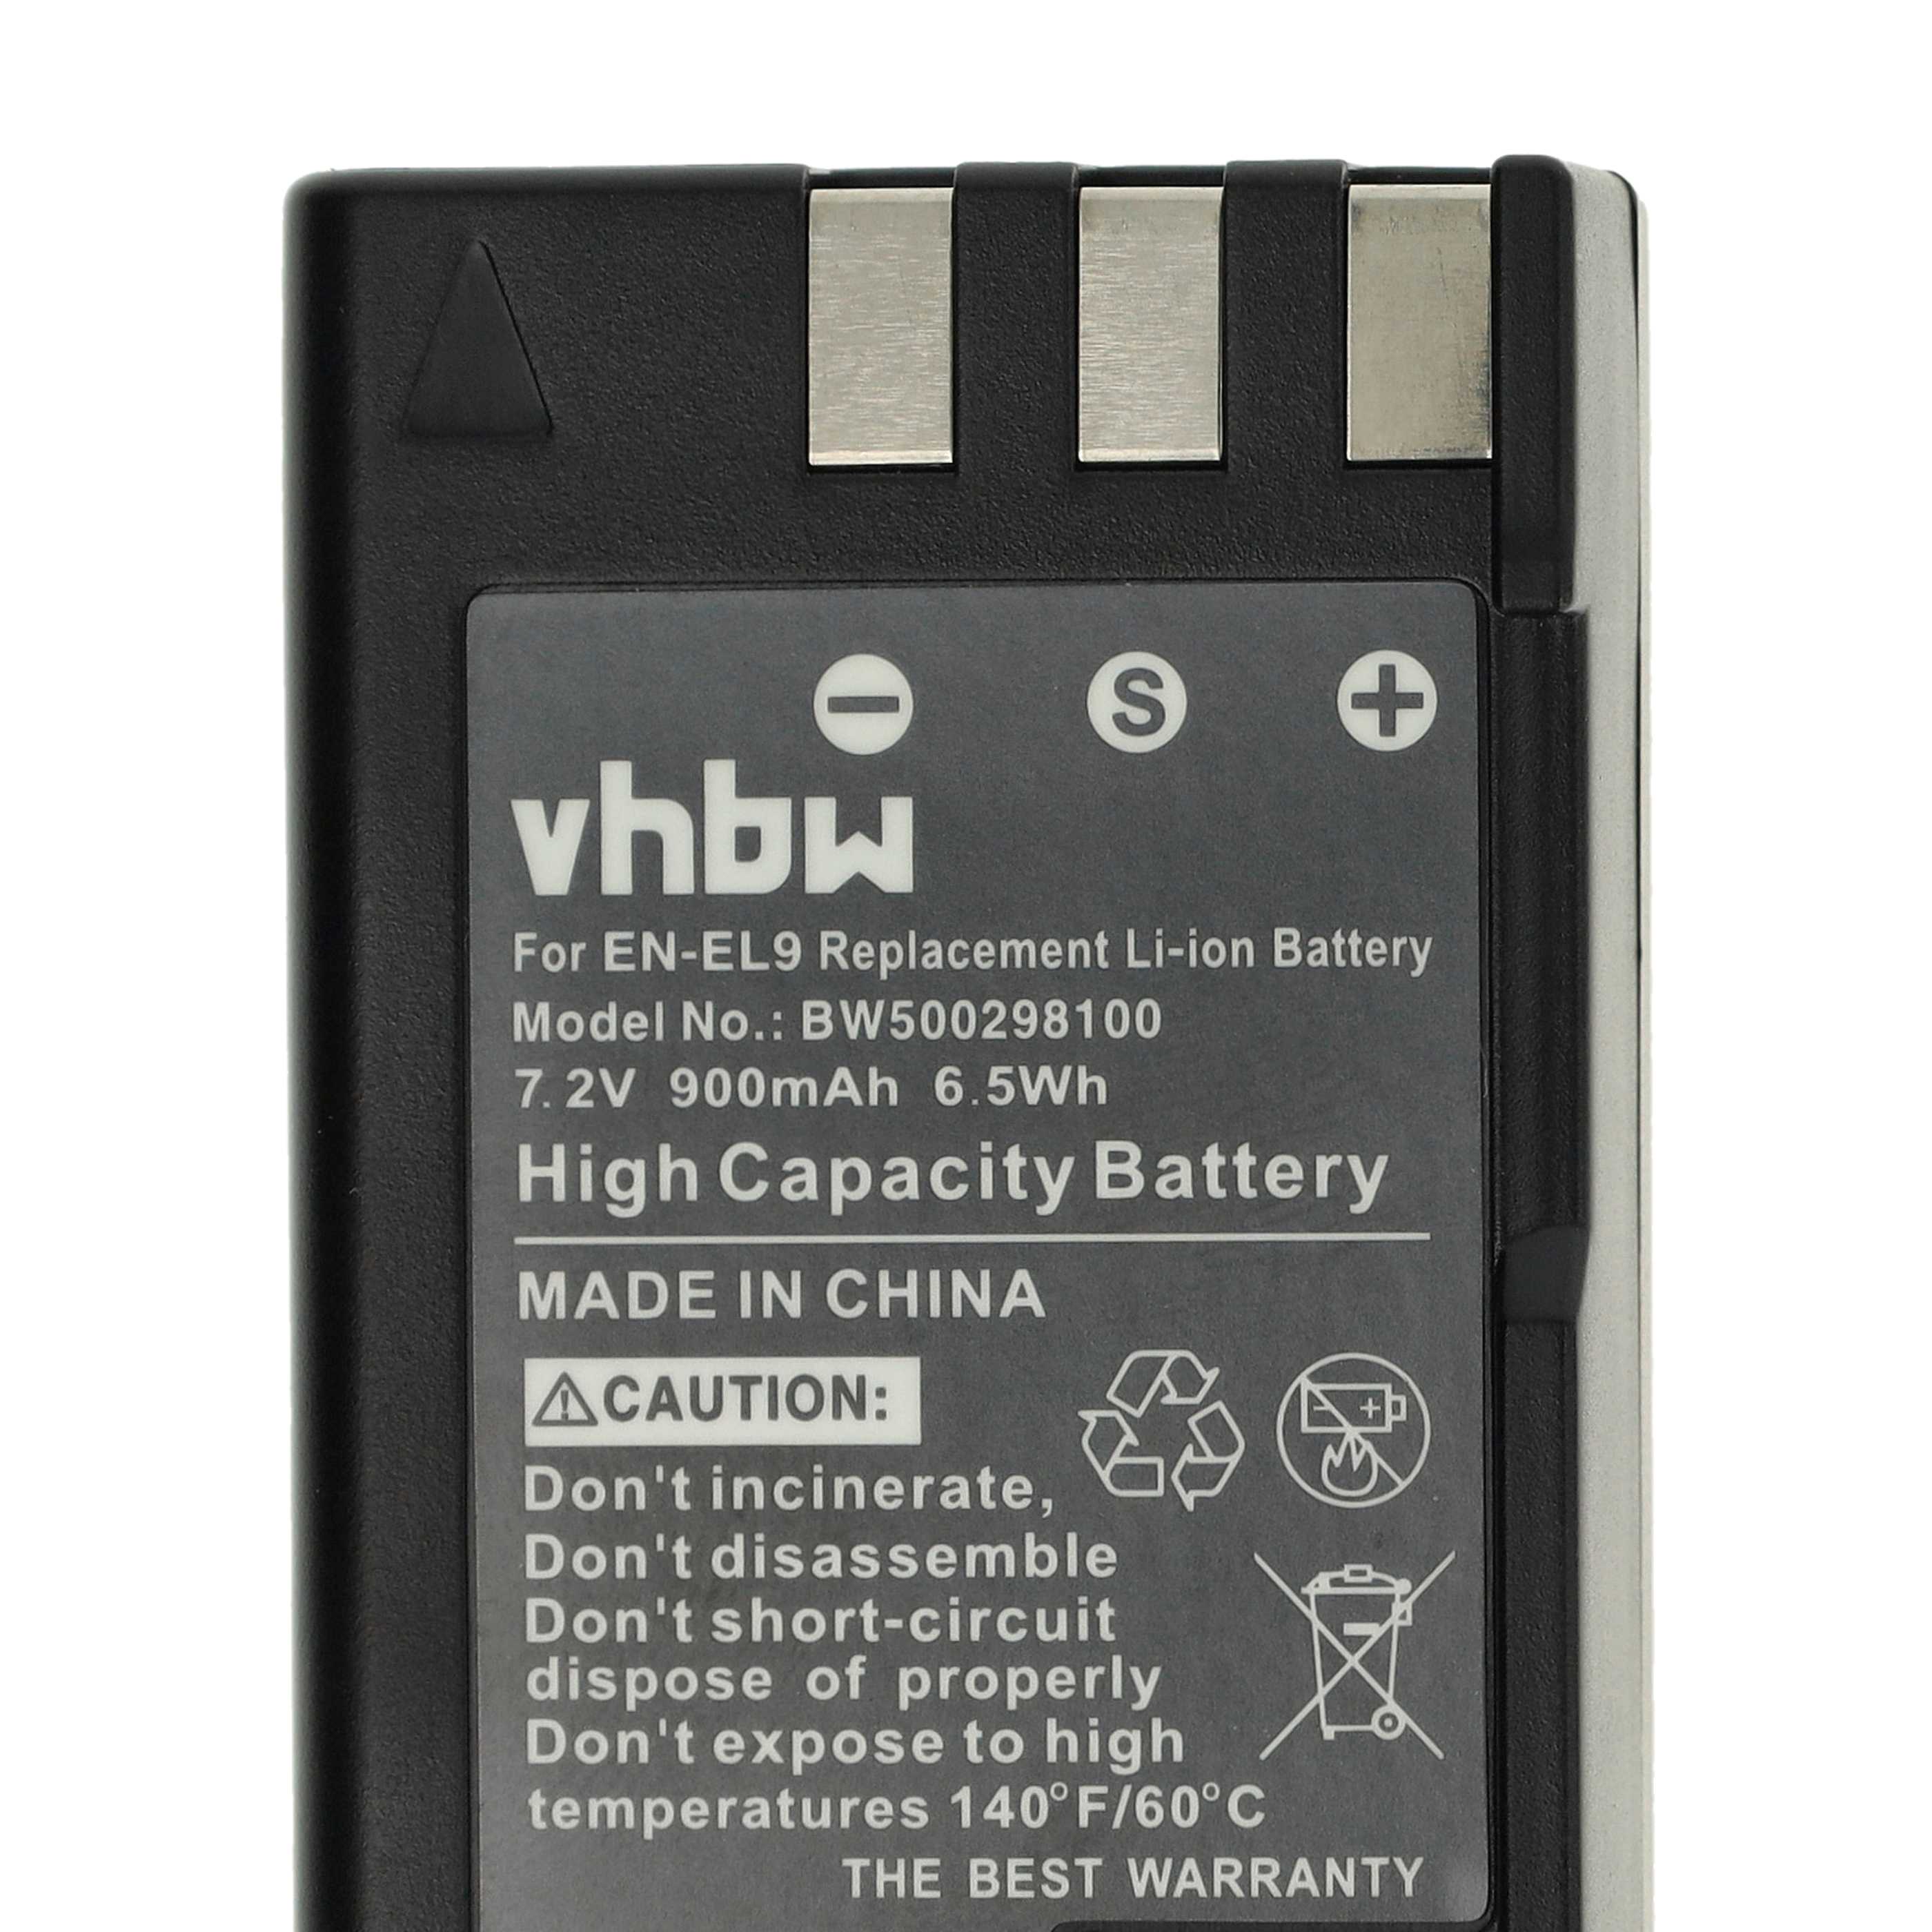 Battery Replacement for Nikon EN-EL9E, EN-EL9a, EN-EL9 - 900mAh, 7.2V, Li-Ion